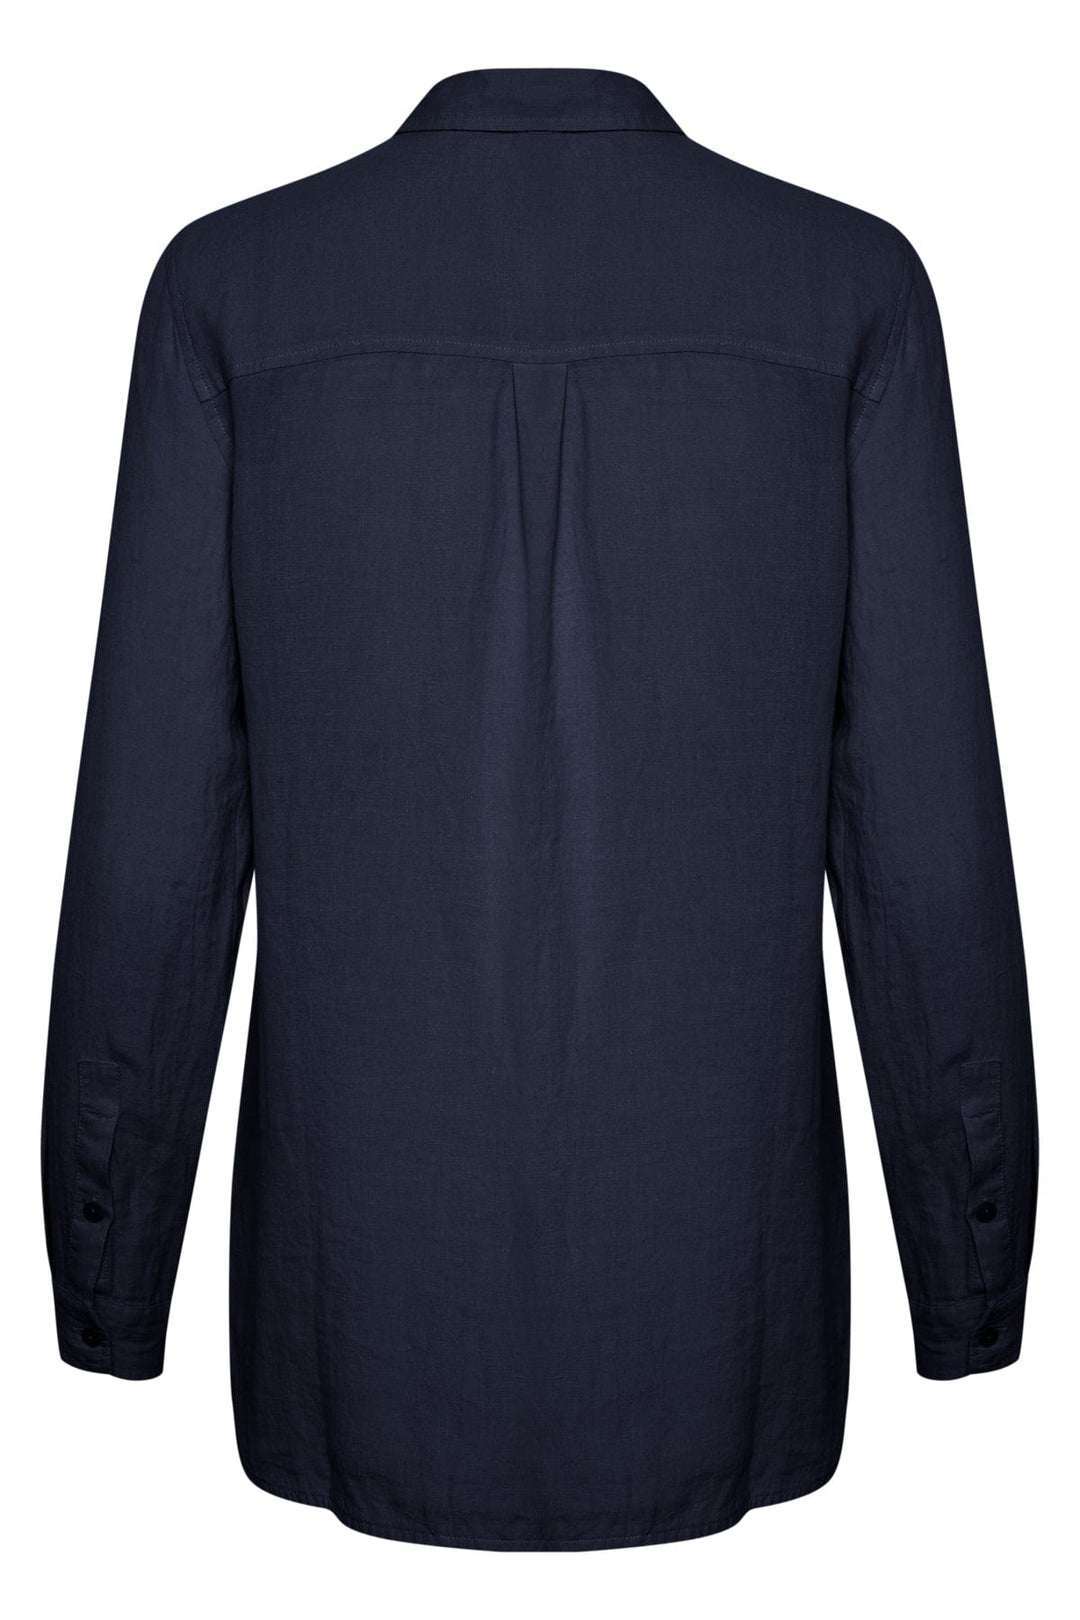 Kivaspw Shirt Night Sky | Skjorter og bluser | Smuk - Dameklær på nett